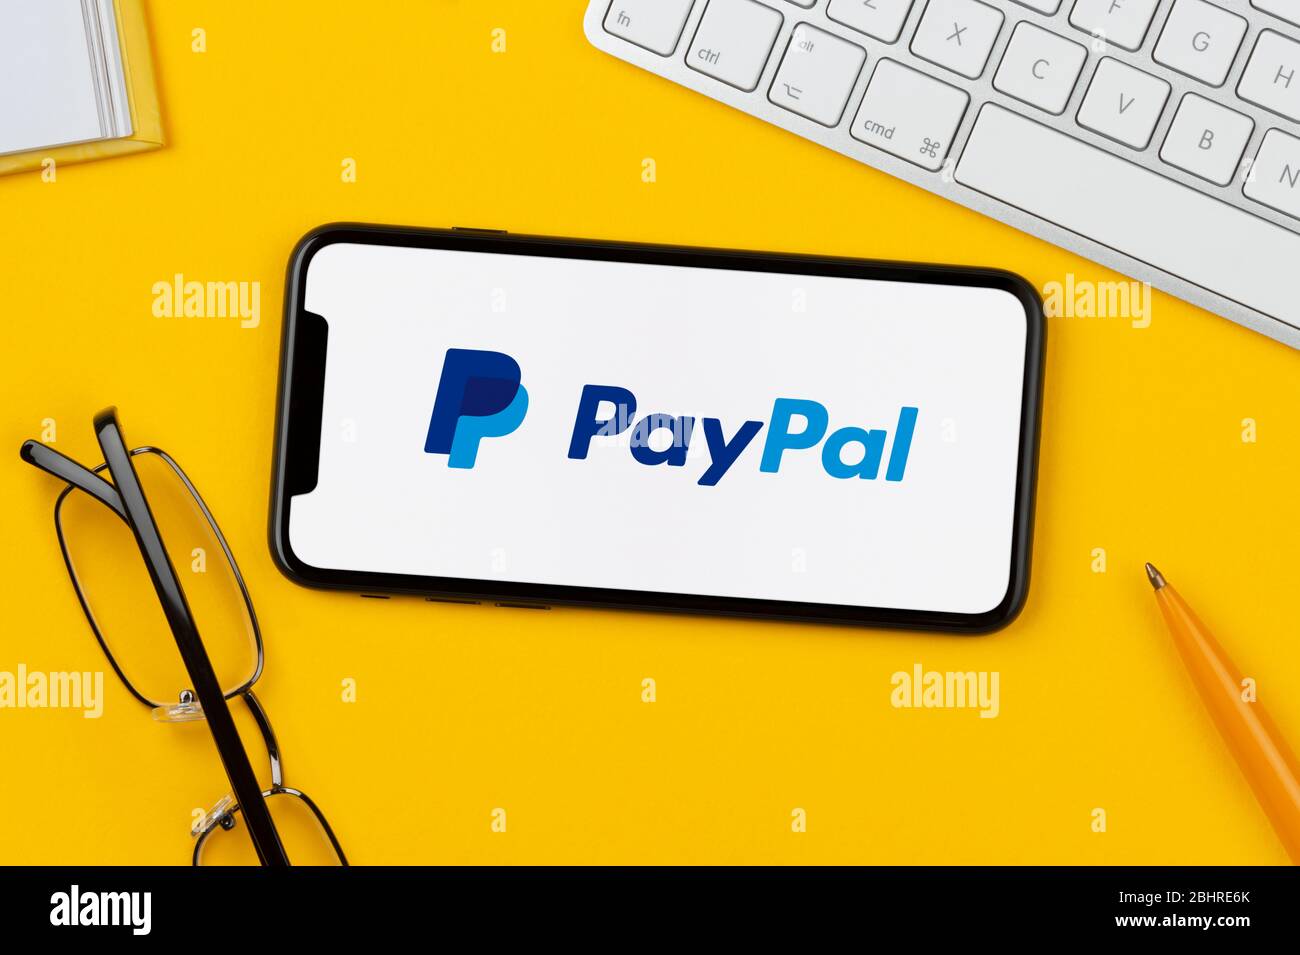 Ein Smartphone mit dem PayPal-Logo liegt auf einem gelben Hintergrund zusammen mit Tastatur, Brille, Stift und Buch (nur für redaktionelle Verwendung). Stockfoto